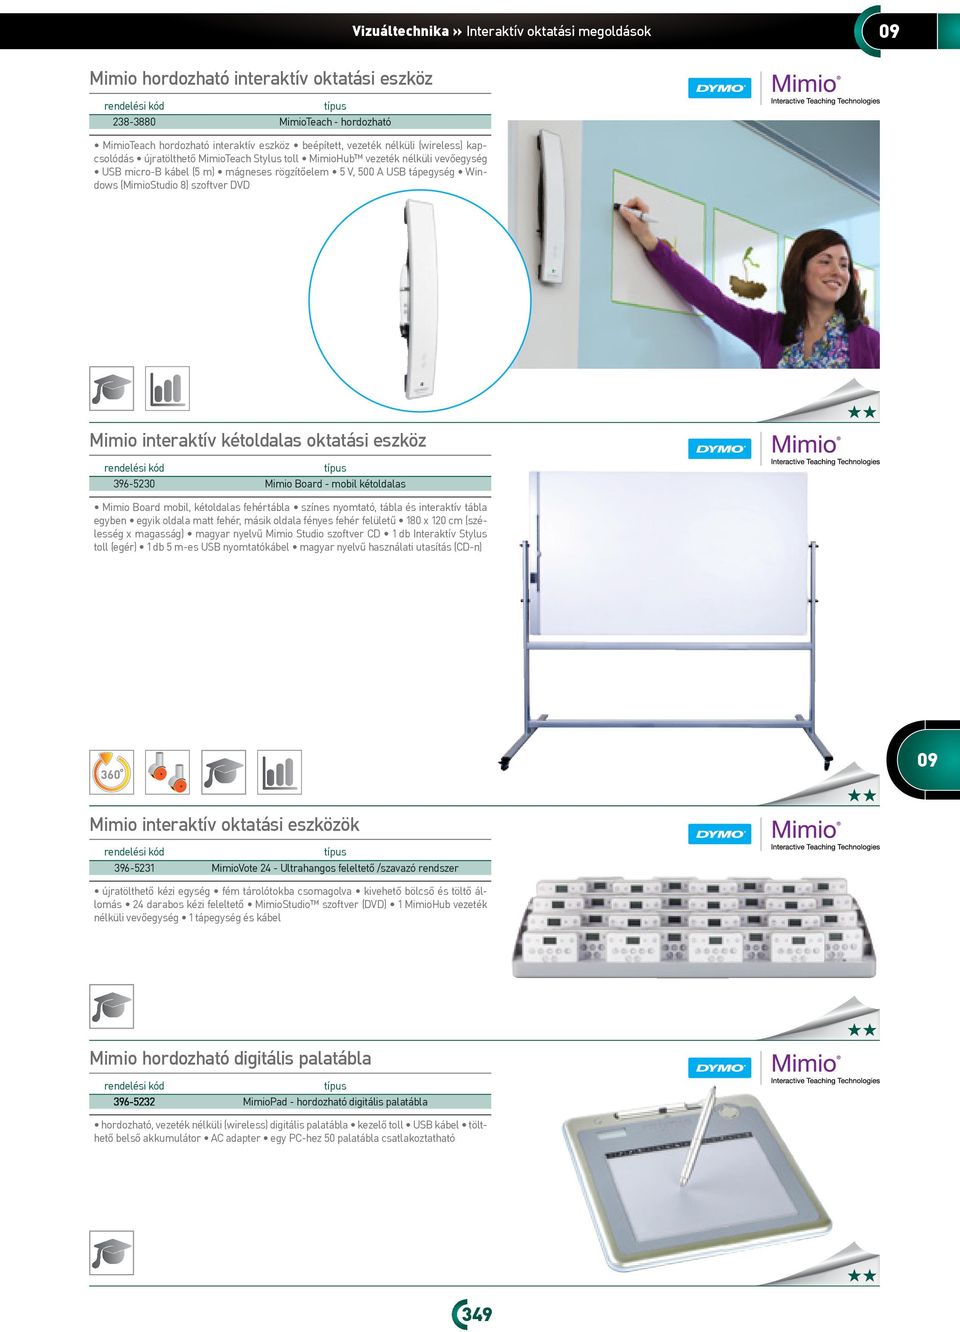 DVD Mimio interaktív kétoldalas oktatási eszköz típus 96-50 Mimio Board - mobil kétoldalas Mimio Board mobil, kétoldalas fehértábla színes nyomtató, tábla és interaktív tábla egyben egyik oldala matt